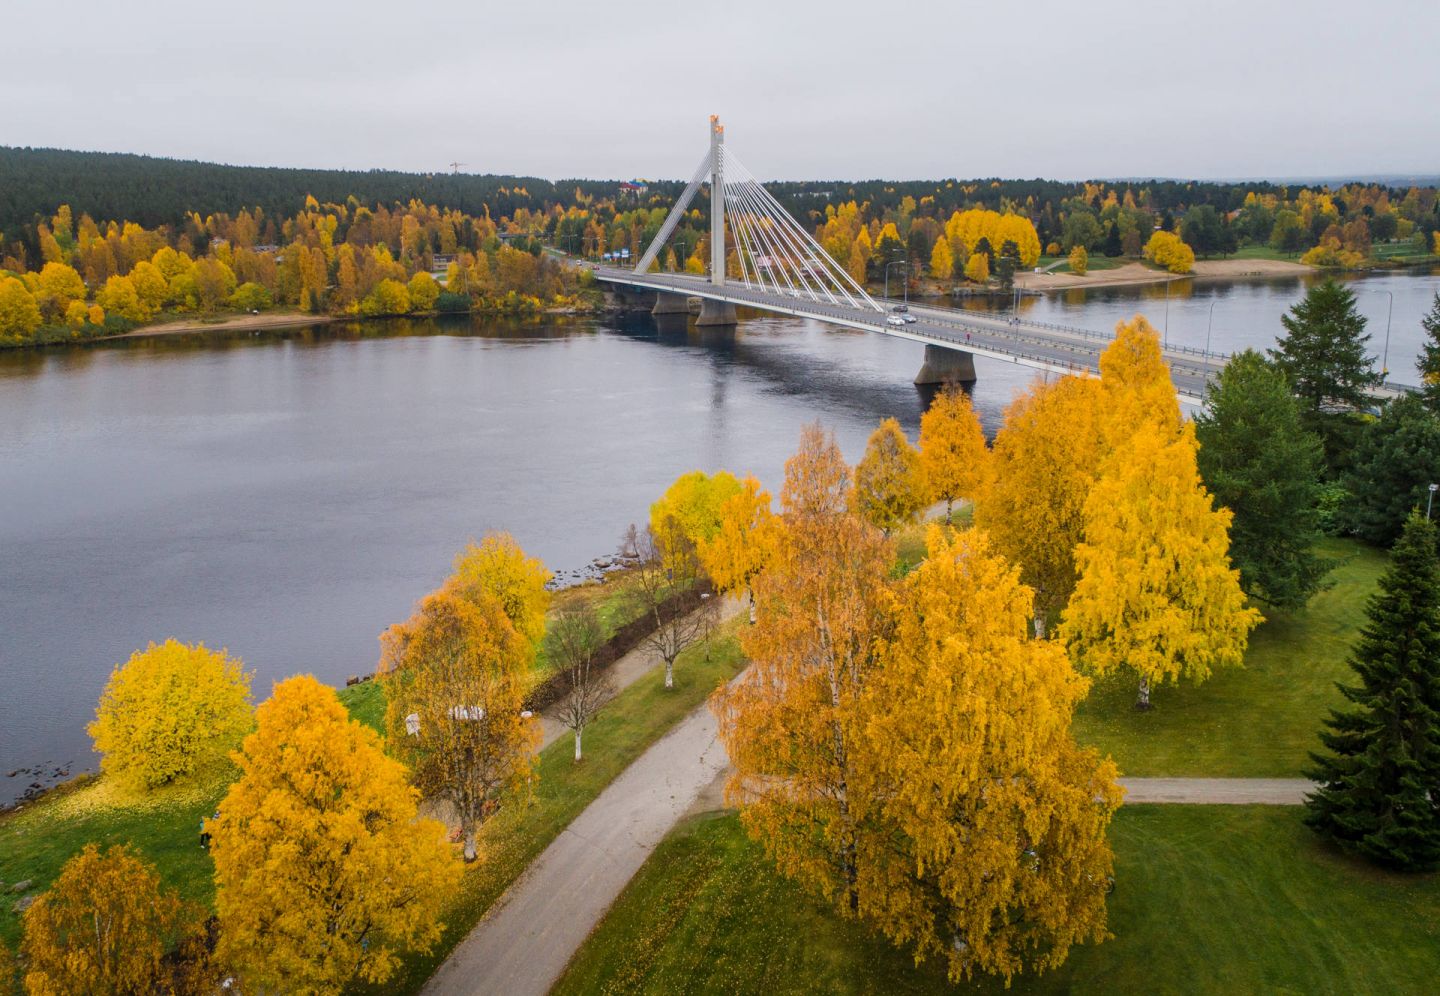 An autumn day in Rovaniemi, Finland